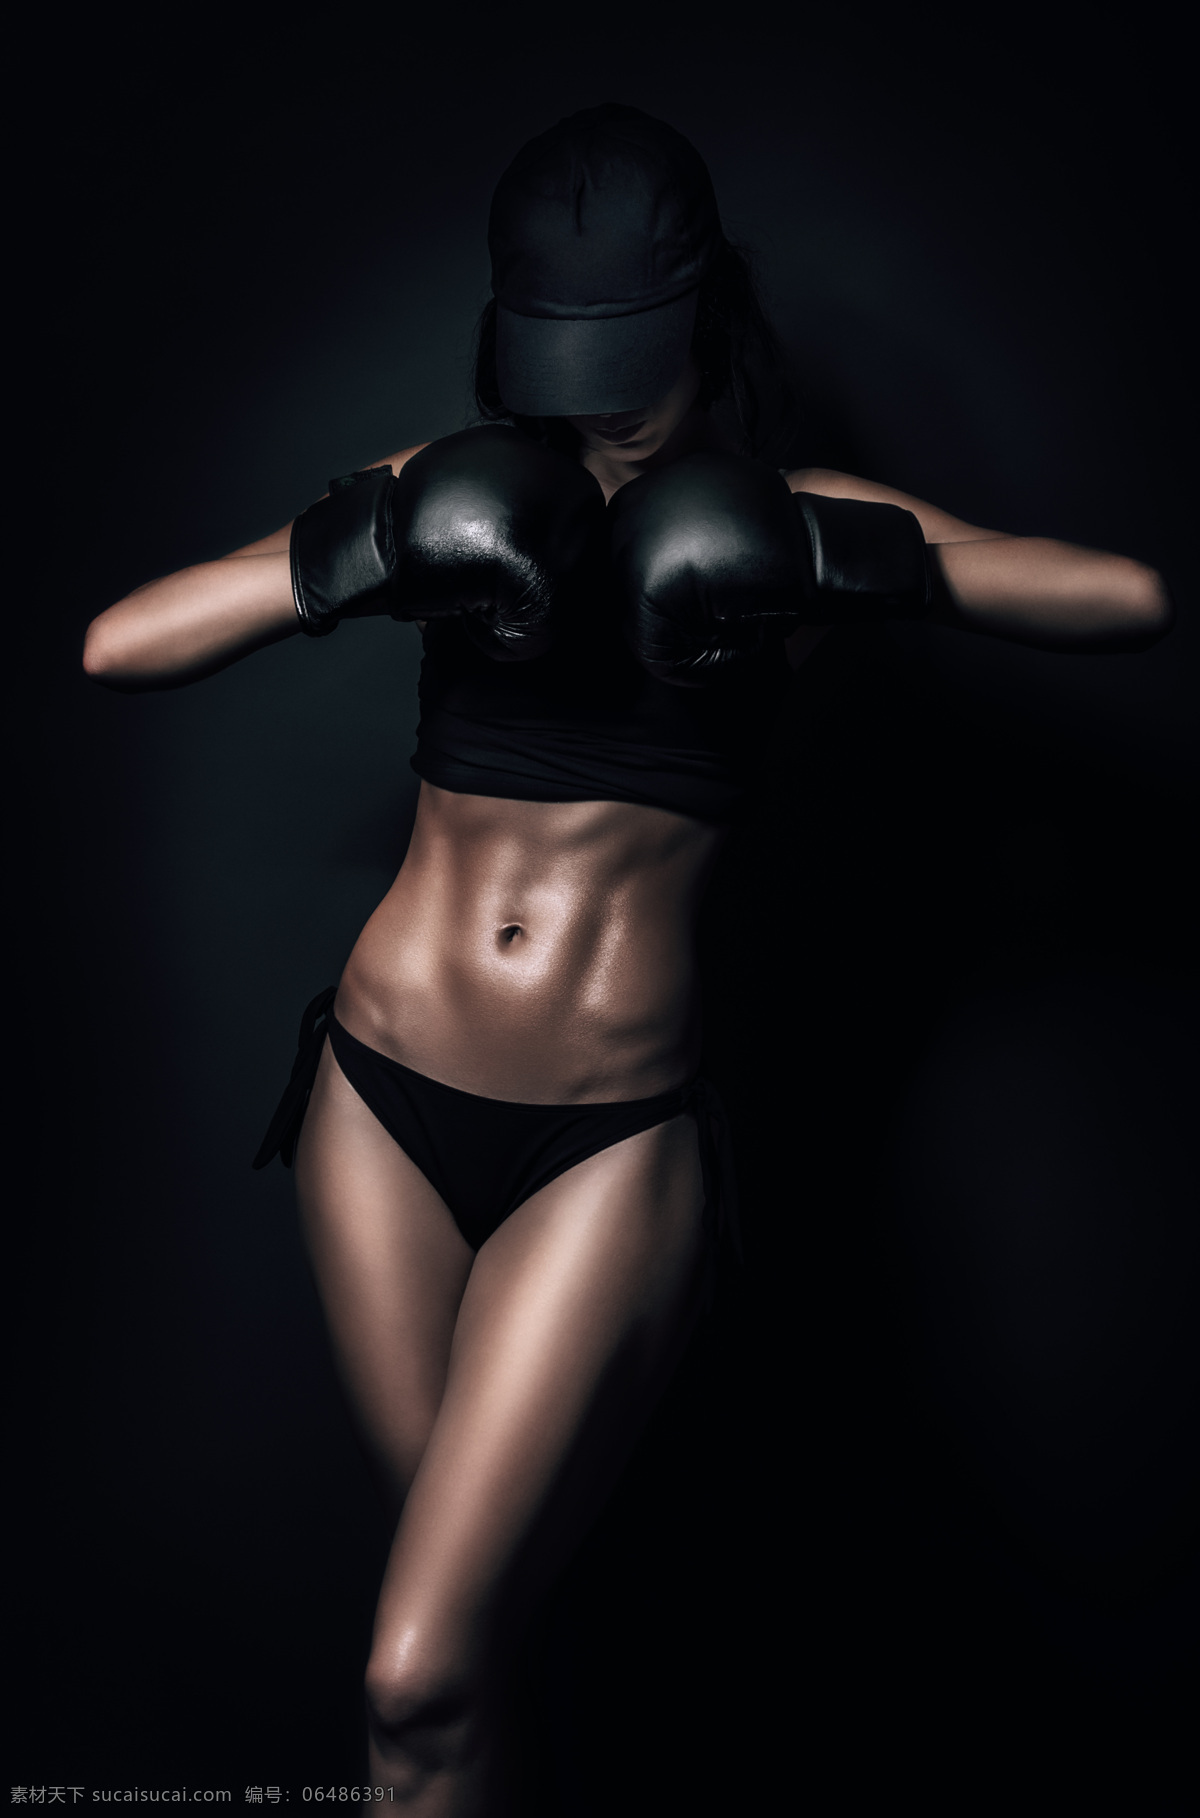 性感女人 拳套 黑色 人鱼线 肌肉 女人 性感 格斗 帽子 设计素材 人物图库 女性女人